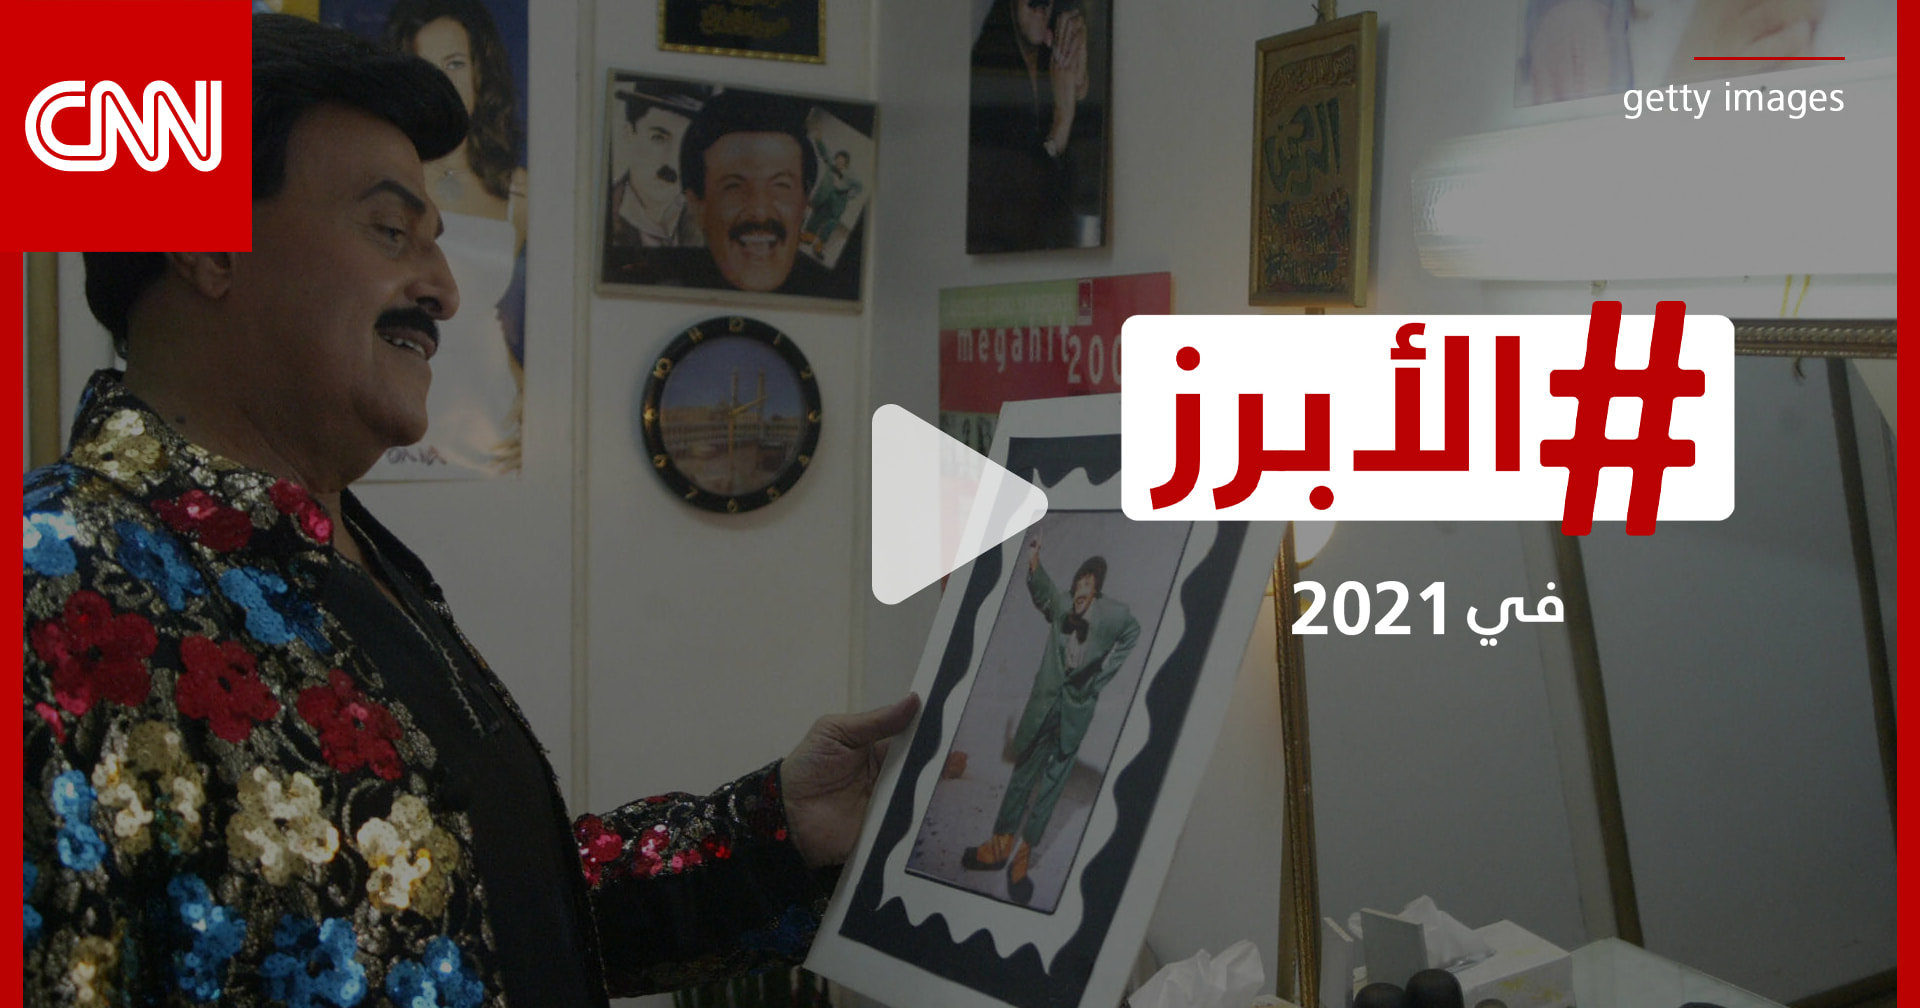 أزمات صحية حرجة... والعالم العربي يودّع أيقوناتٍ فنية خالدة في 2021